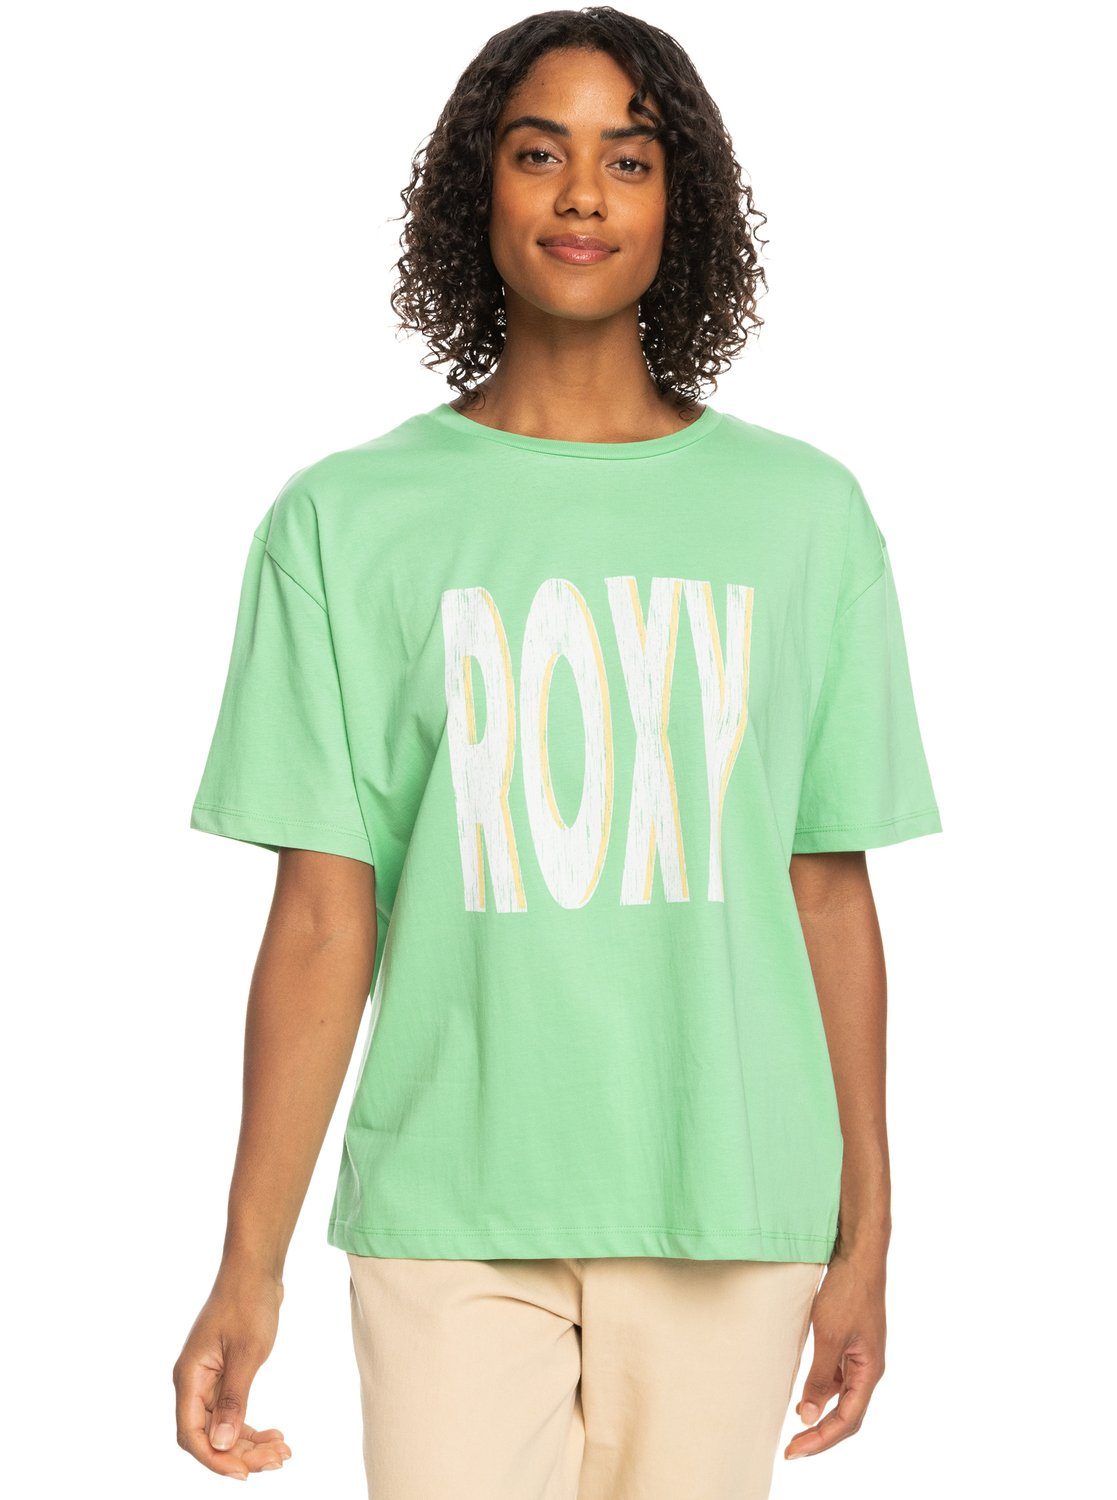 The Frauen Sky - Print-Shirt Sand Under Roxy T-Shirt für